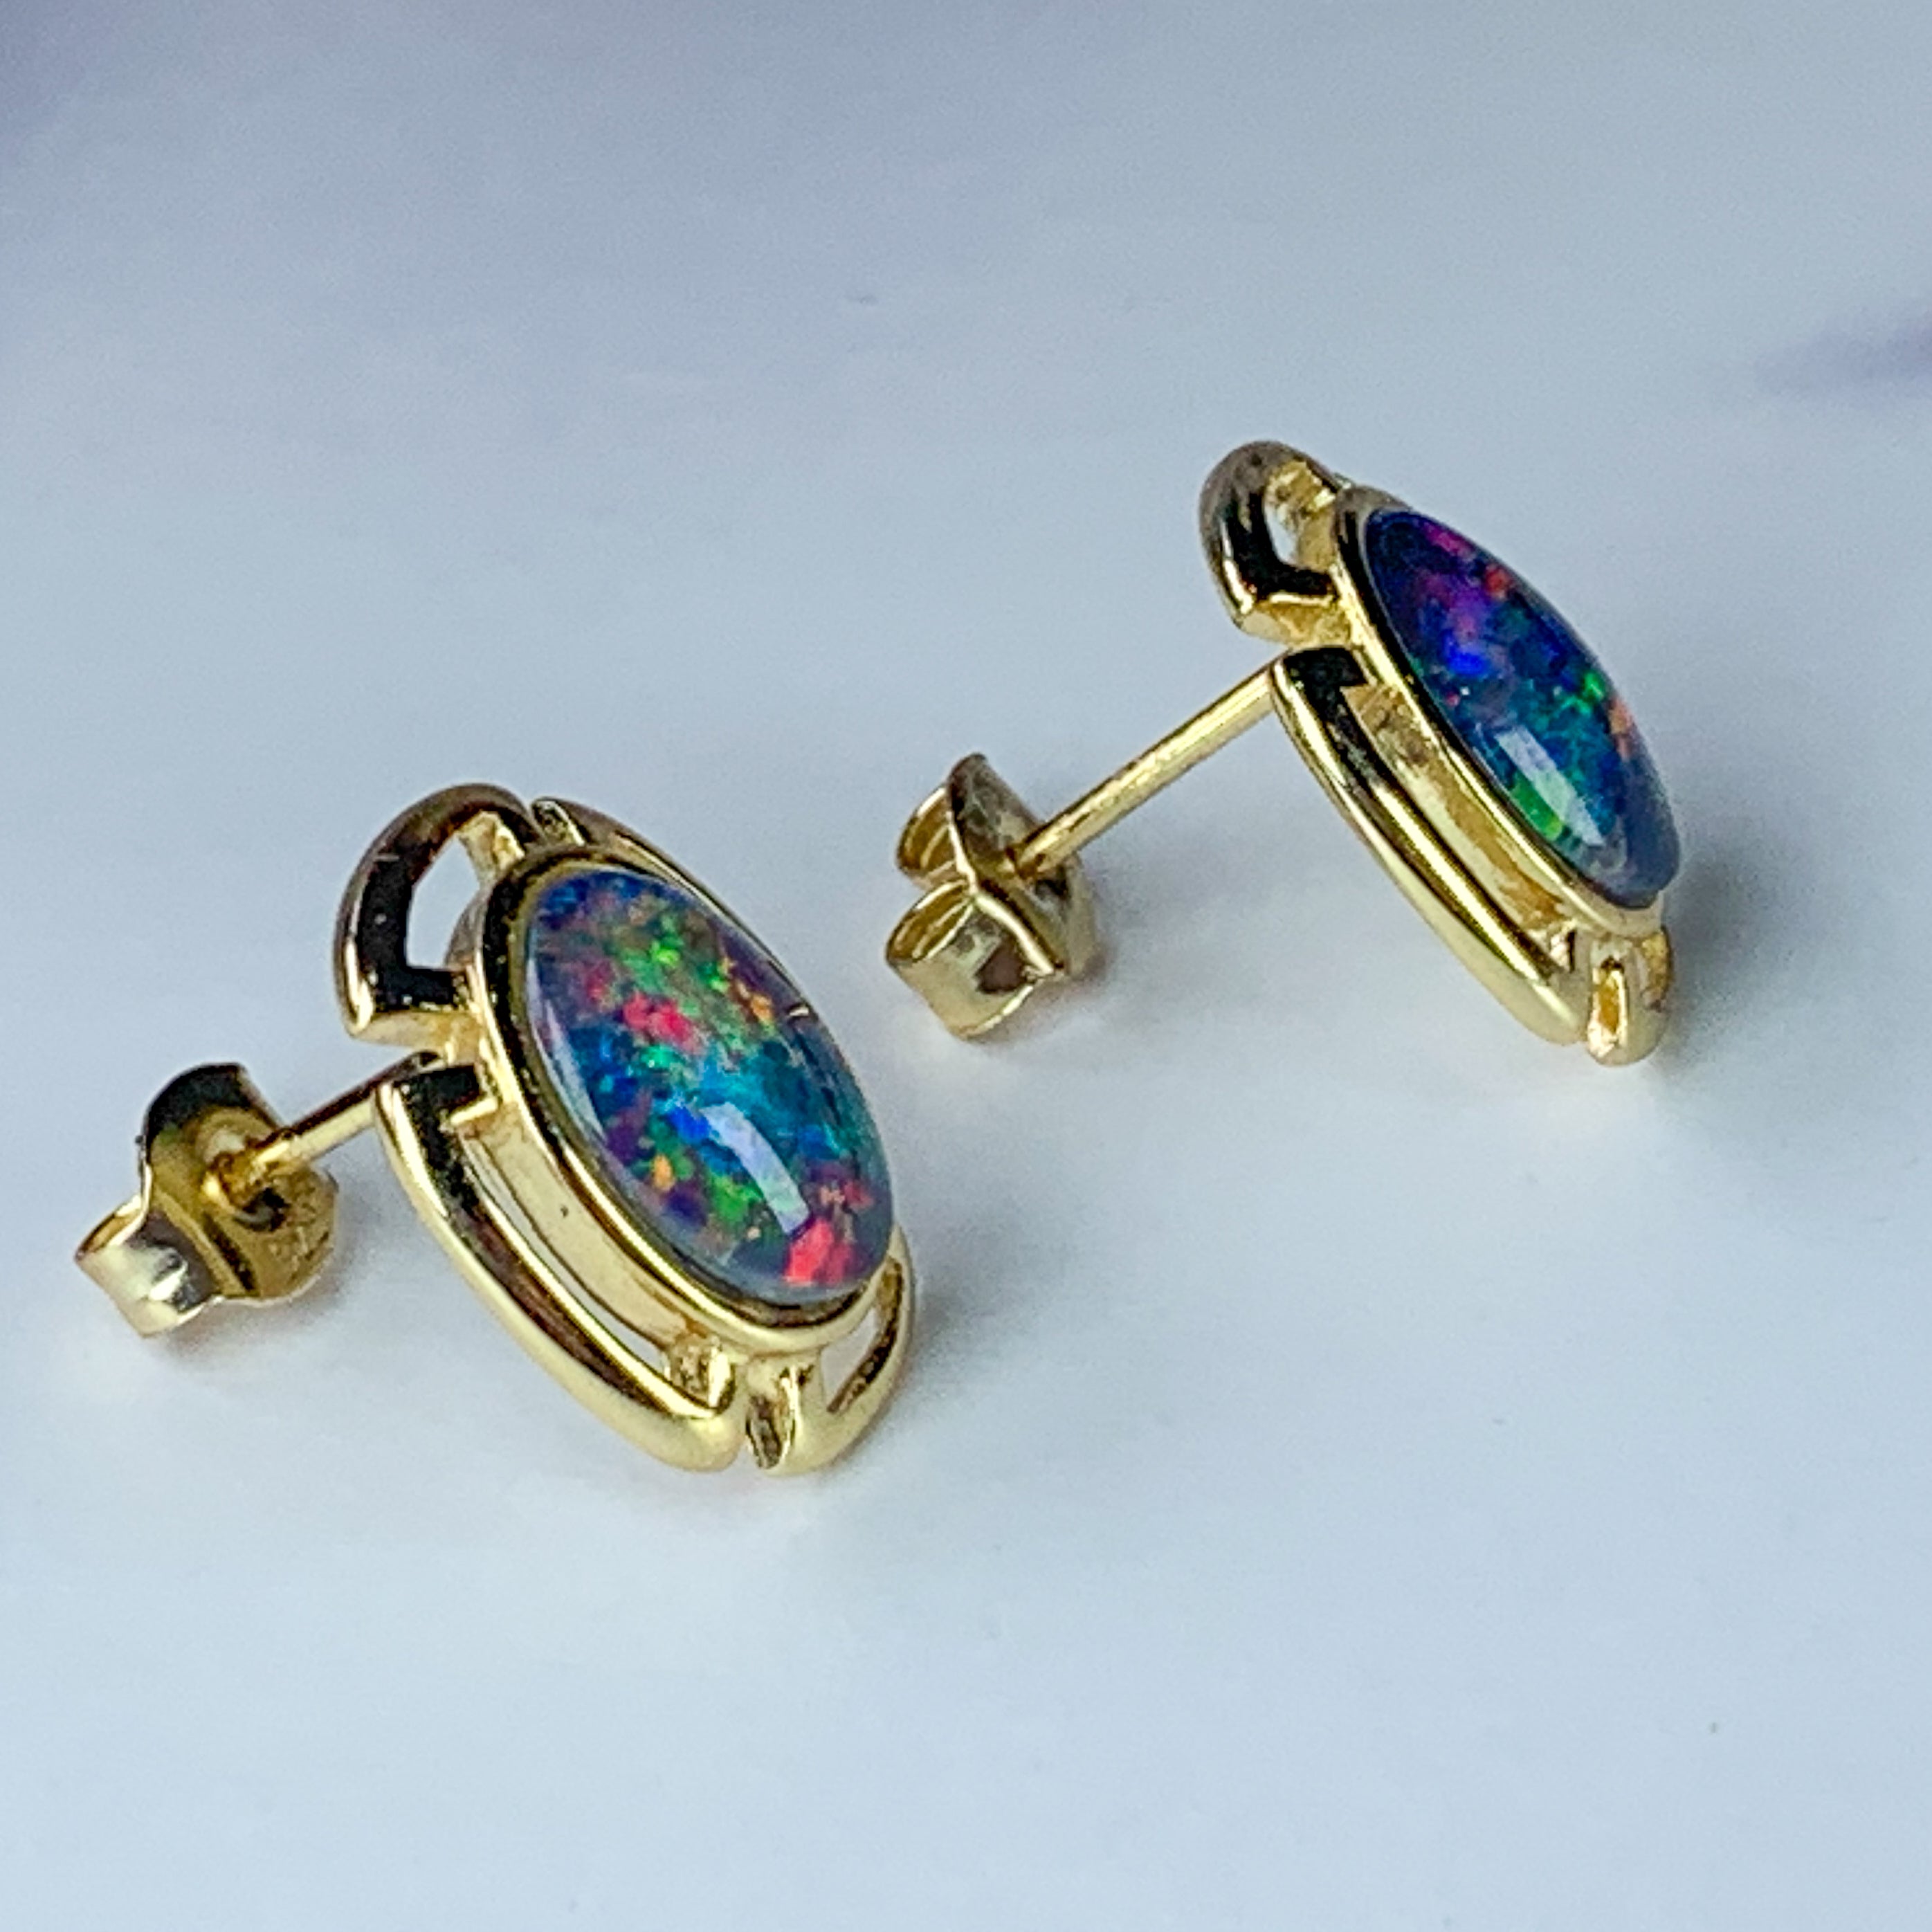 Silver Gold plated 9x7mm Opal cut out style earrings - Masterpiece Jewellery Opal & Gems Sydney Australia | Online Shop